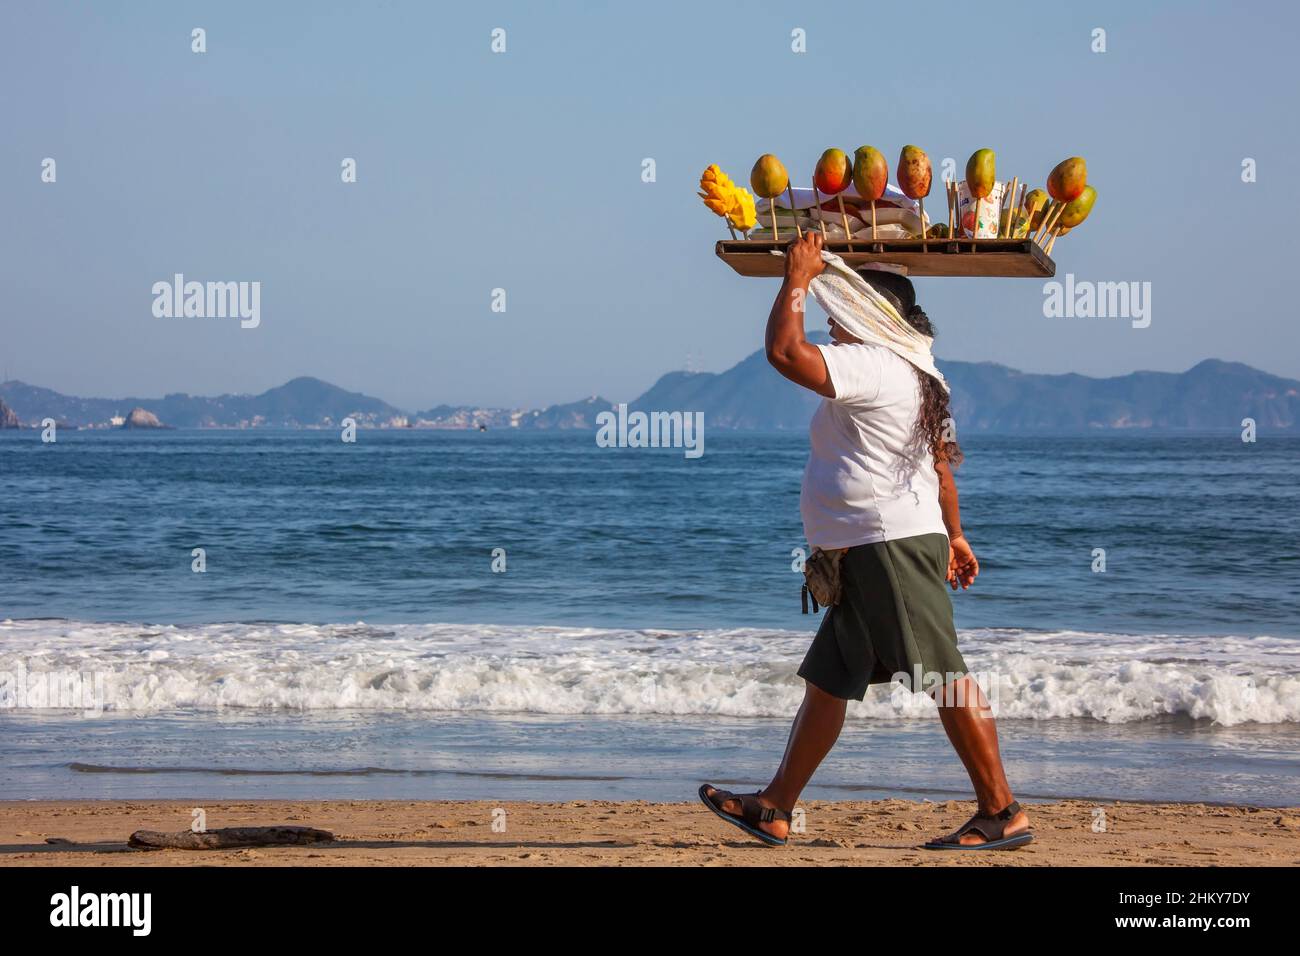 Woman selling fruit. Manzanillo beach. Pacific Ocean. Colima. Mexico, North America Stock Photo